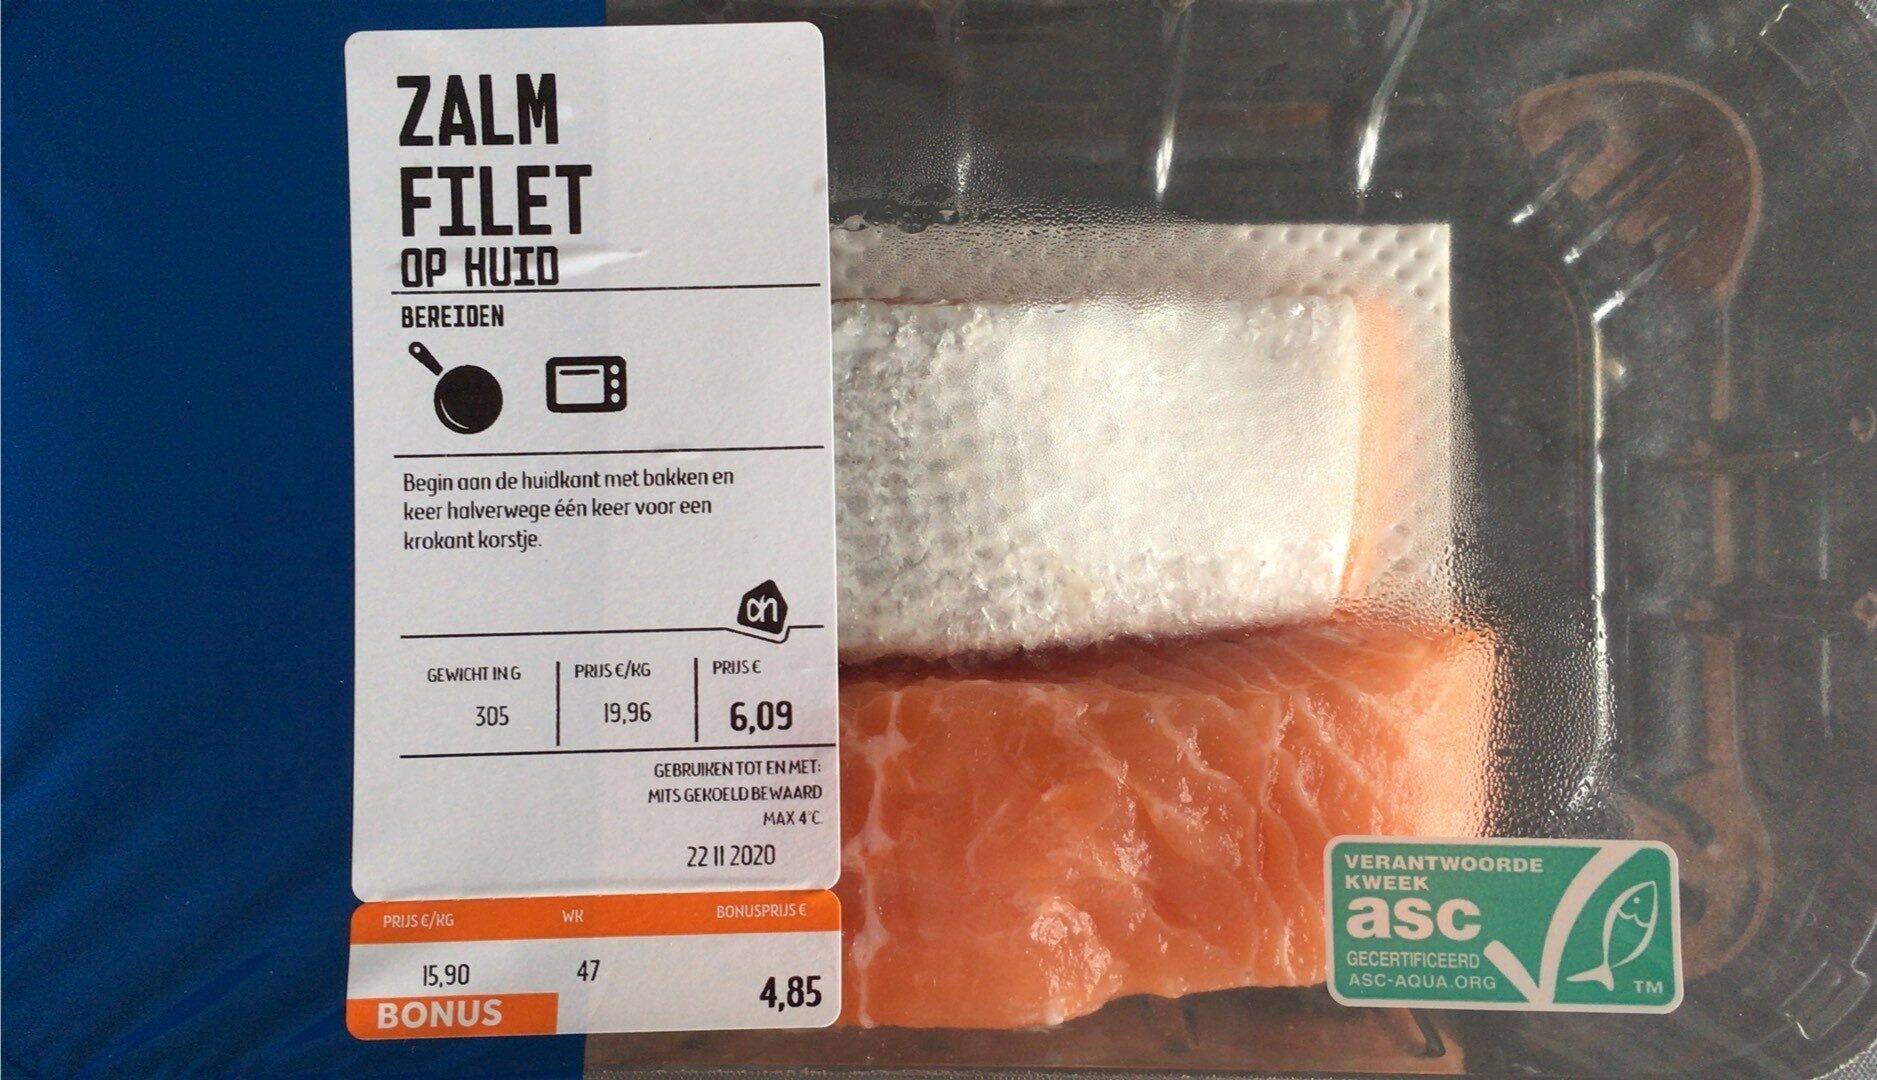 Filet de saumon sur peau - Product - fr